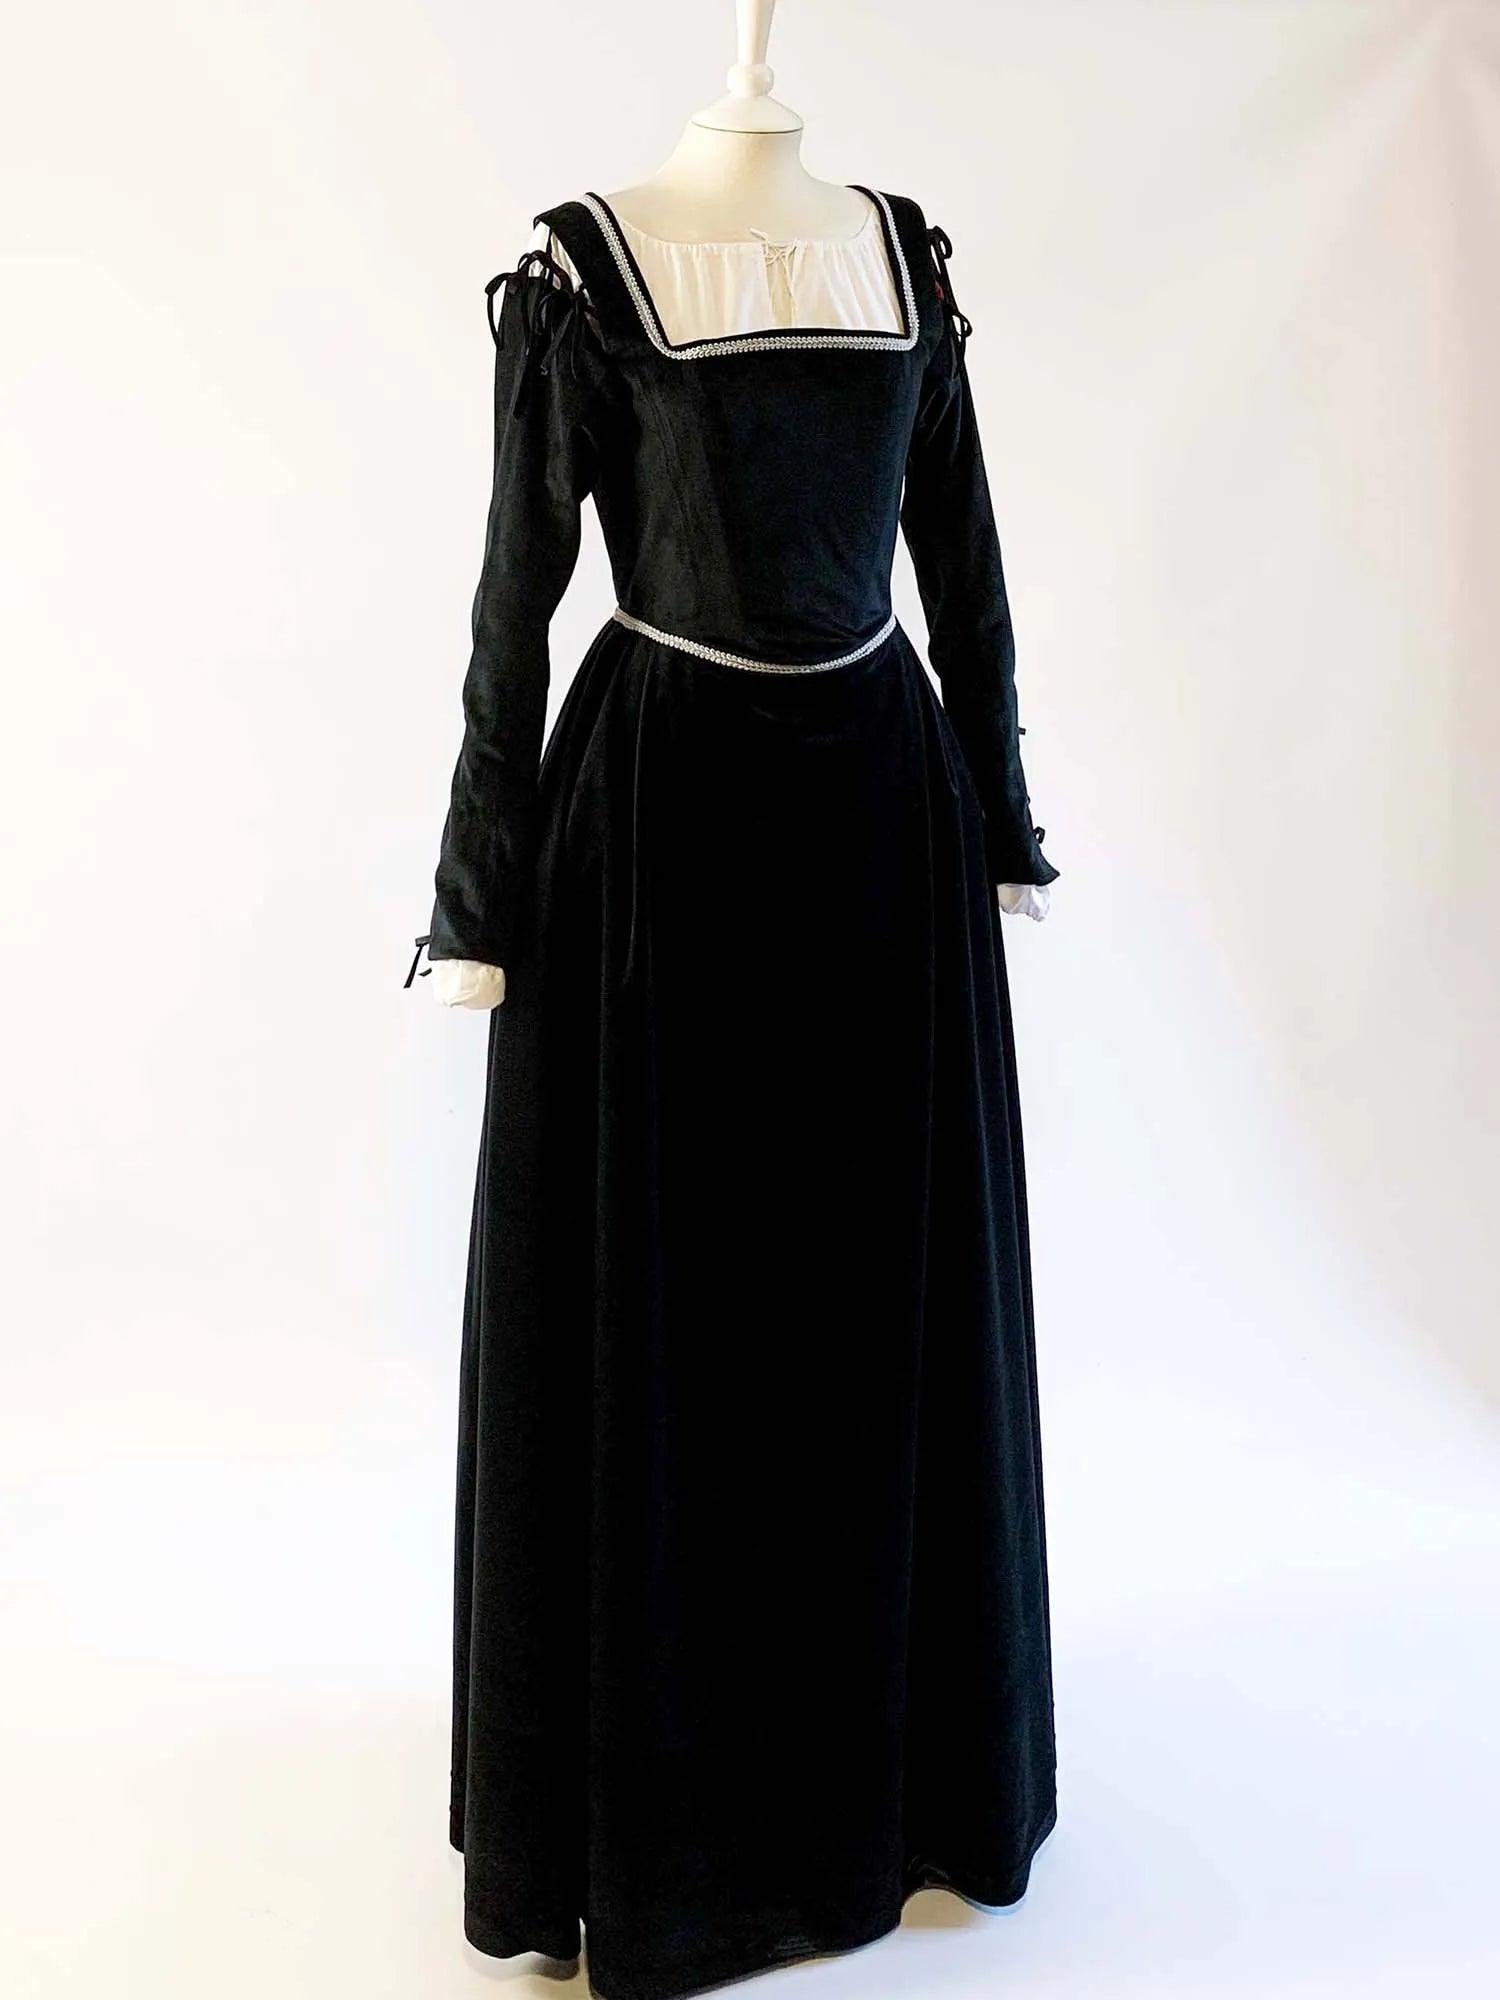 ANN, Renaissance Dress in Black Velvet with Removable Sleeves - Atelier Serraspina